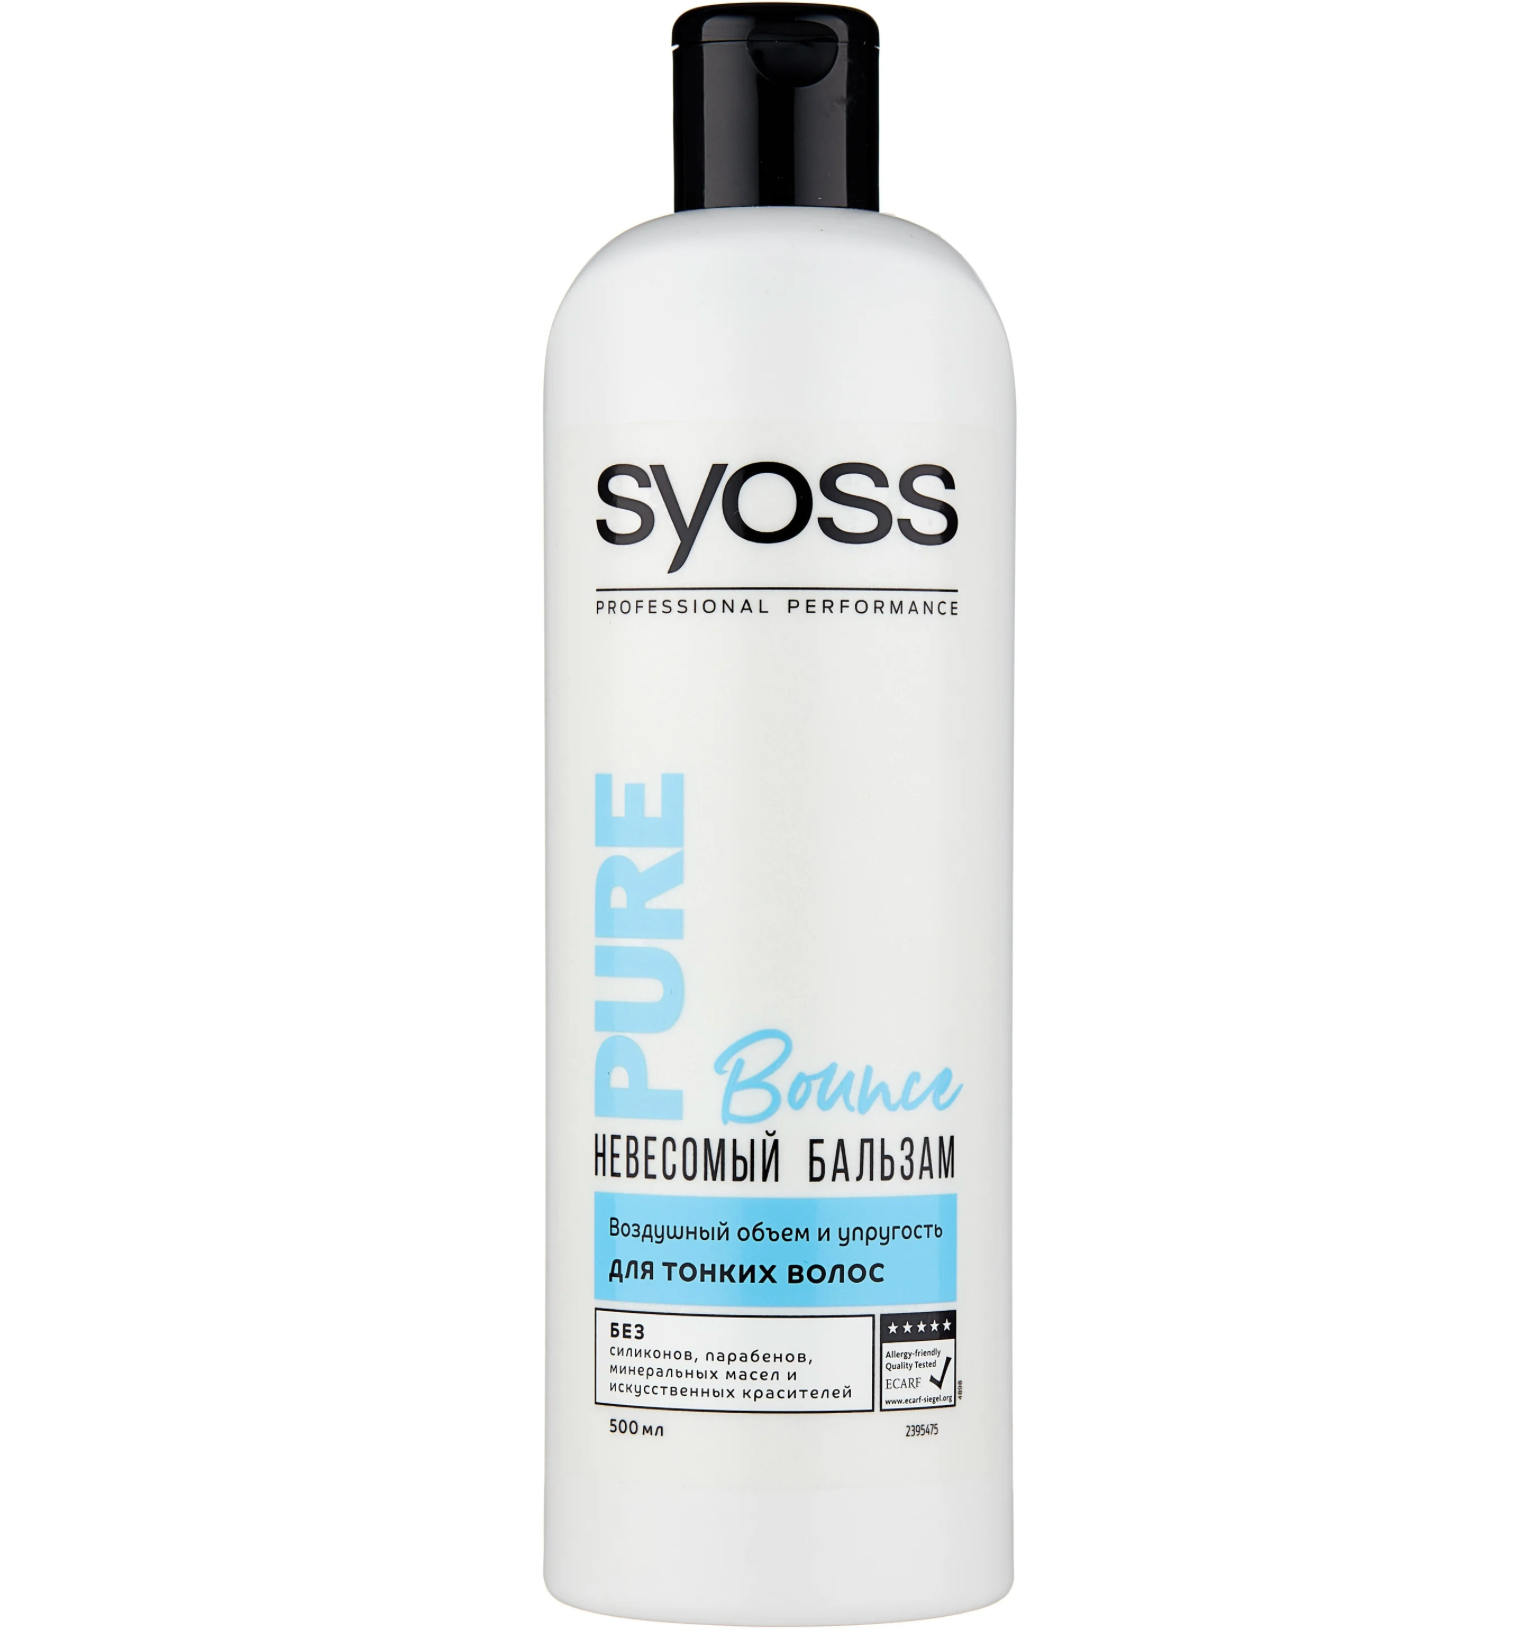 Сьосс / Syoss Pure Bounce - Невесомый бальзам для тонких волос воздушный объем и упругость 500 мл